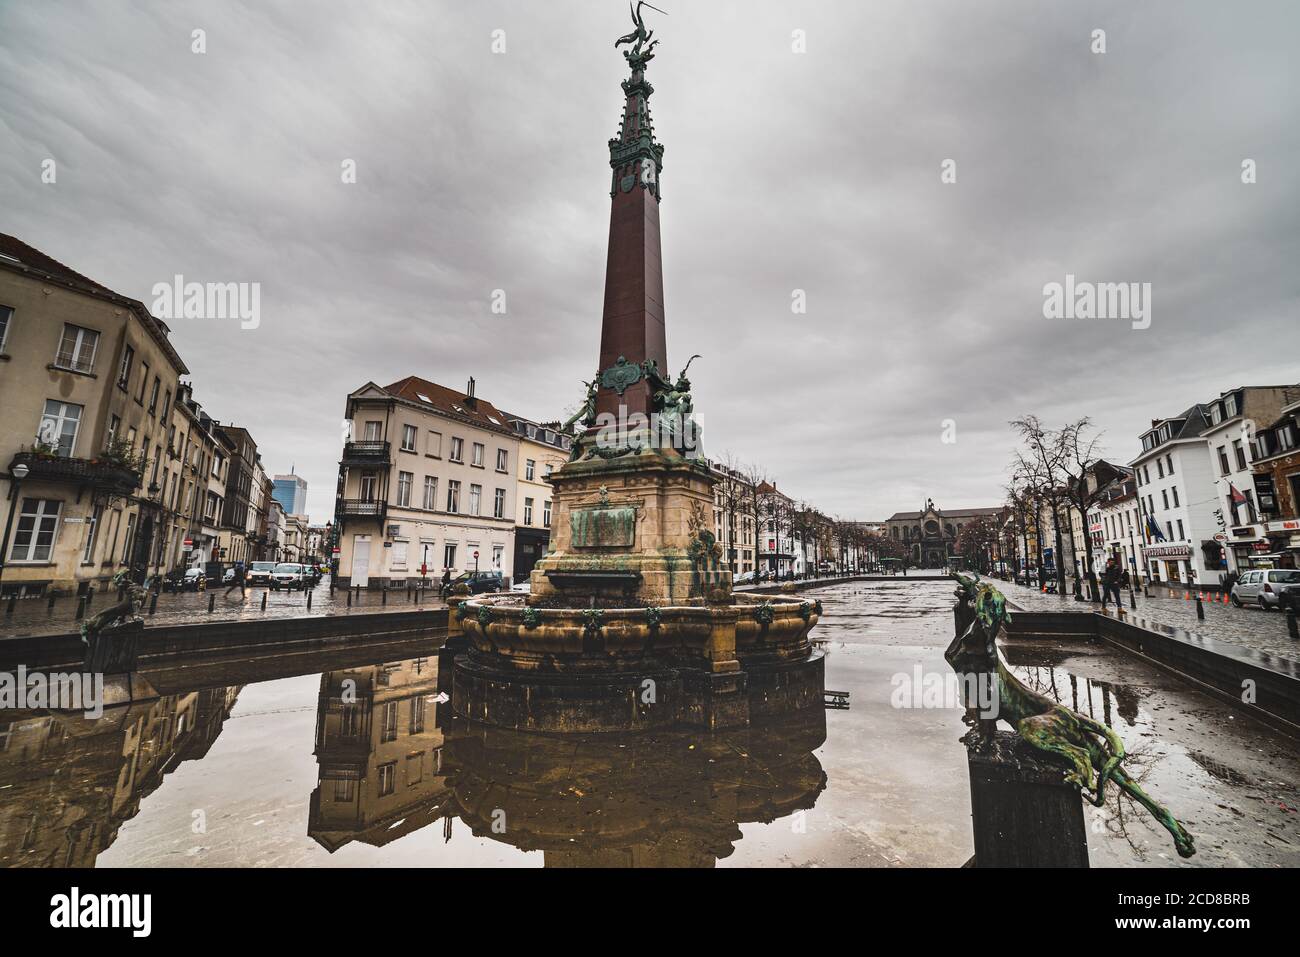 Reflet éclectique de l'architecture dans la fontaine Fontaine Anspach à Quai aux briques contre un temps sombre en place de Brouckere - Bruxelles Banque D'Images